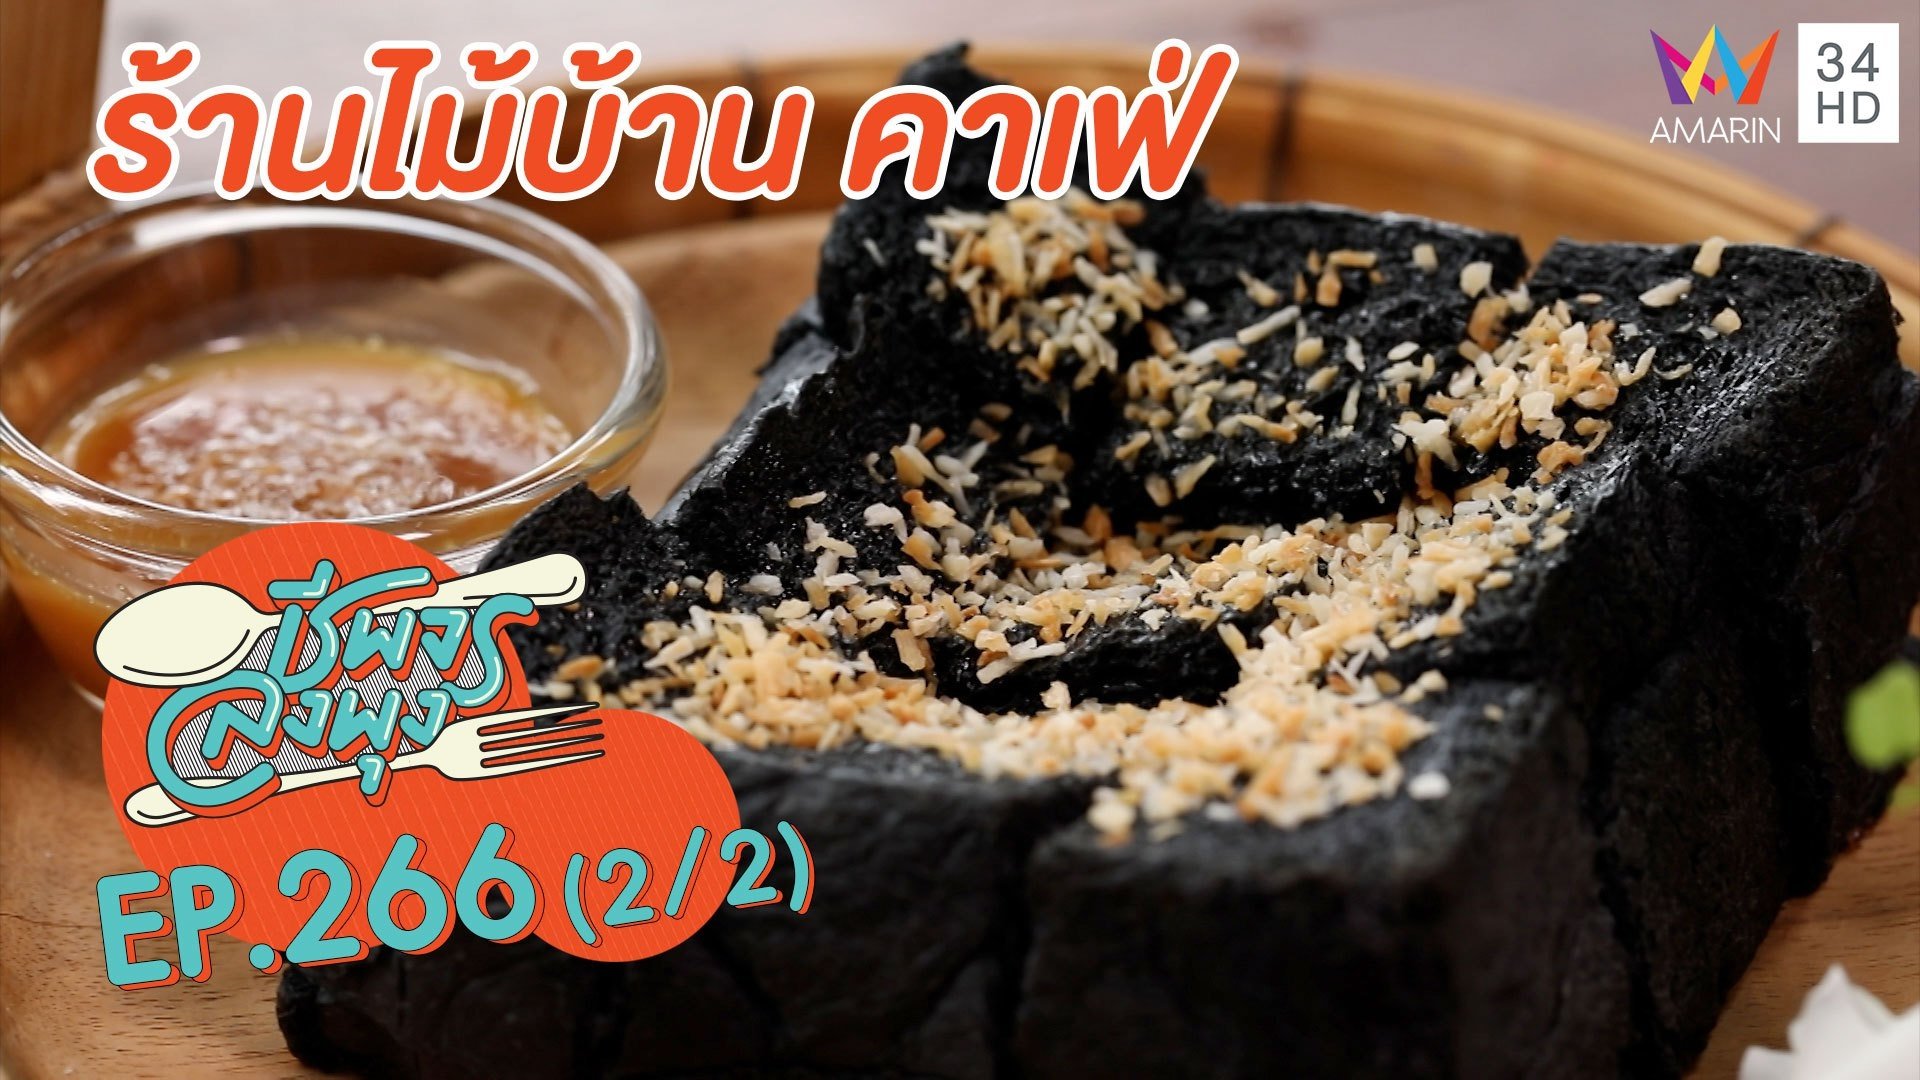 อาหารอร่อย บรรยากาศเลิศ 'ร้านไม้บ้าน คาเฟ่'  | ชีพจรลงพุง | 9 ม.ค. 64 (2/2) | AMARIN TVHD34